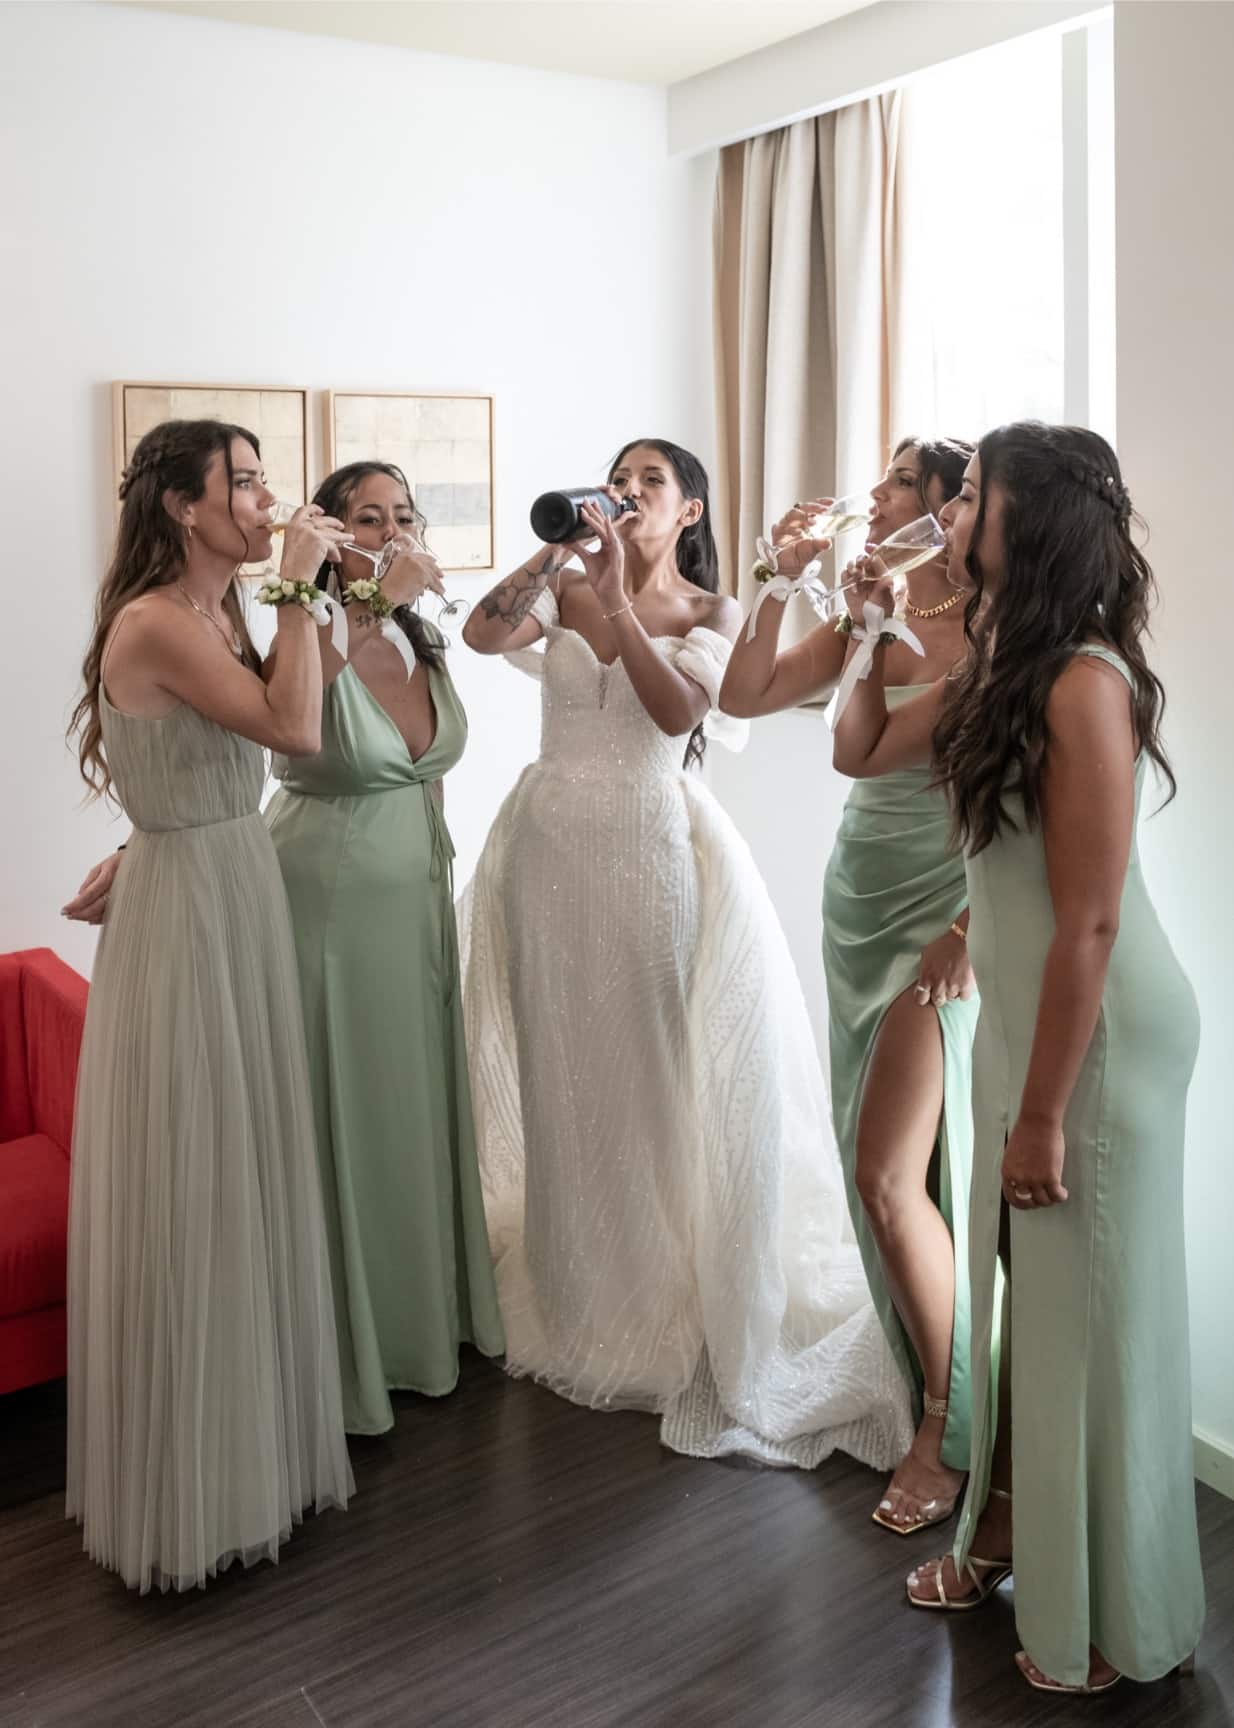 Fotografía de boda de la novia Nasthia tomando champange